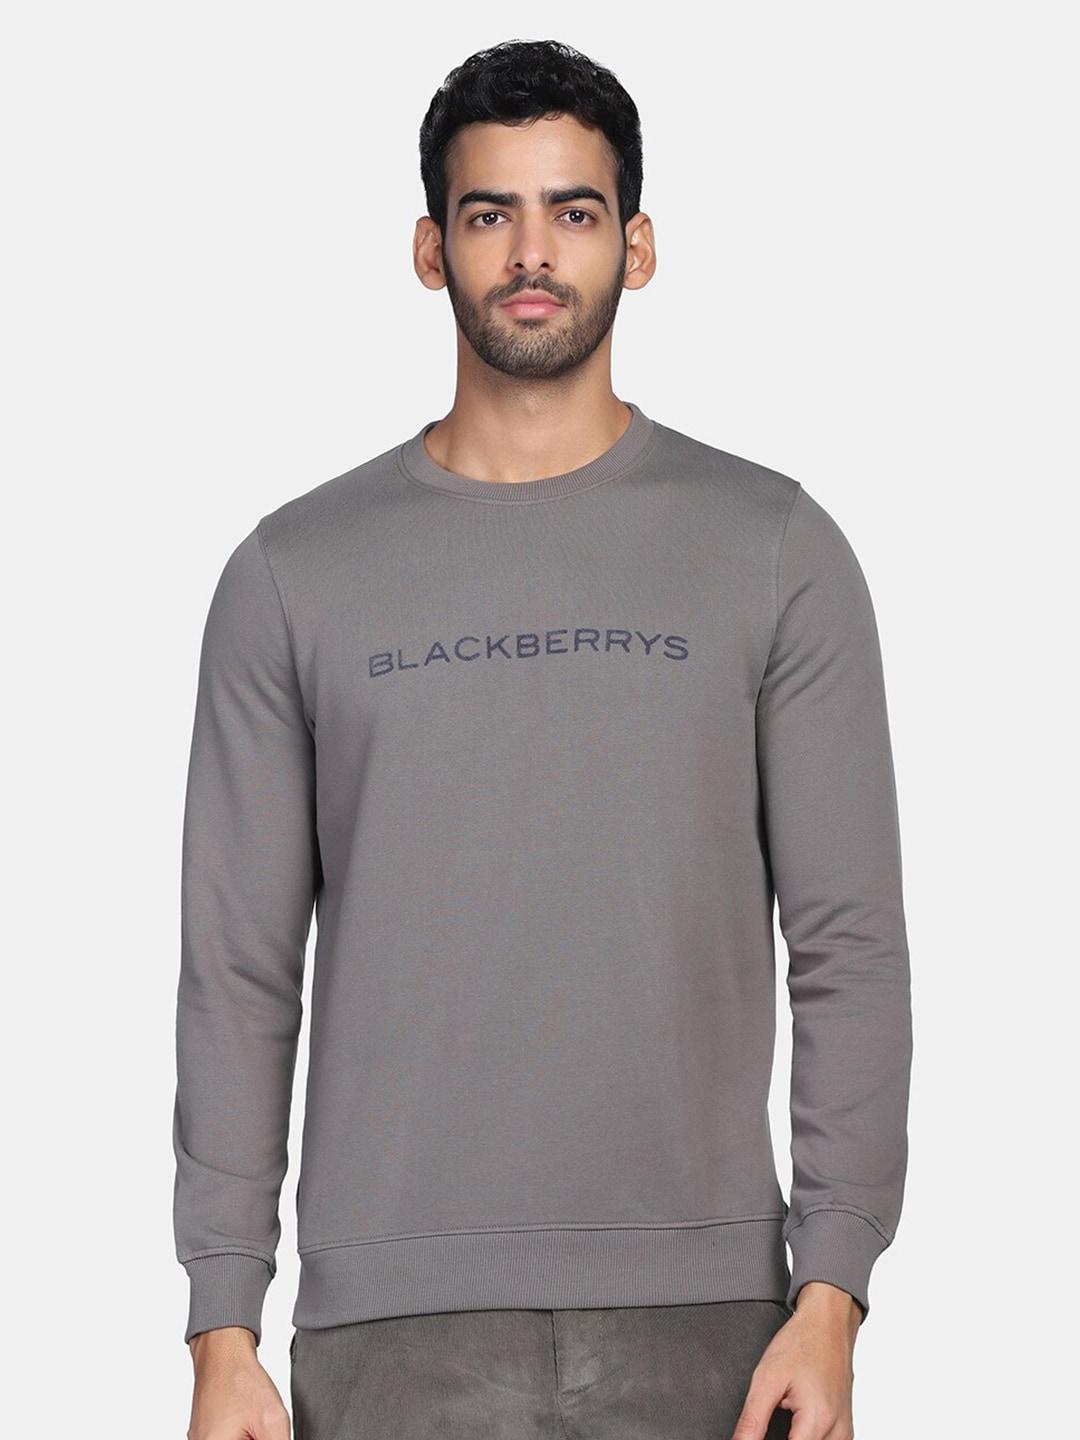 blackberrys-men-grey-printed-sweatshirt